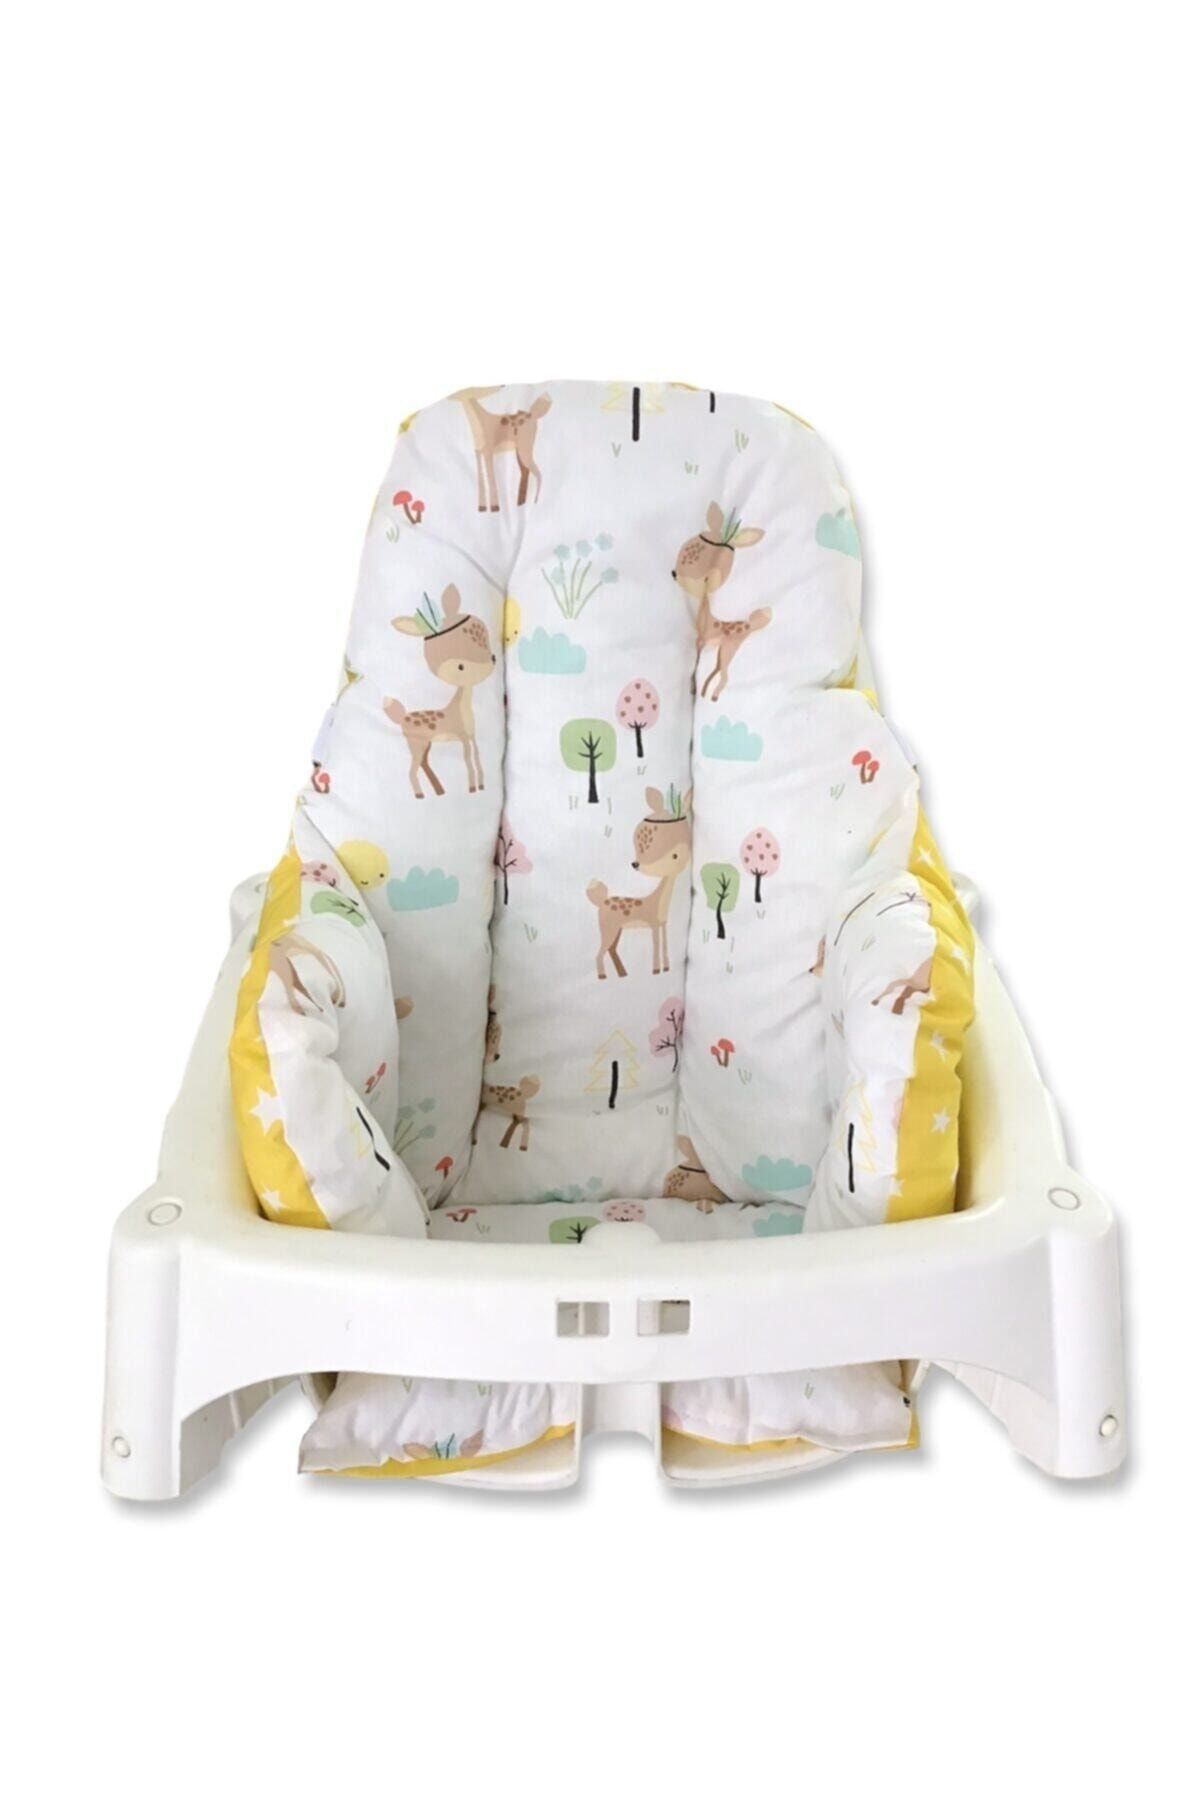 Bebek Özel Pamuk Bebek Çocuk Mama Sandalyesi Minderi Karaca Sarı